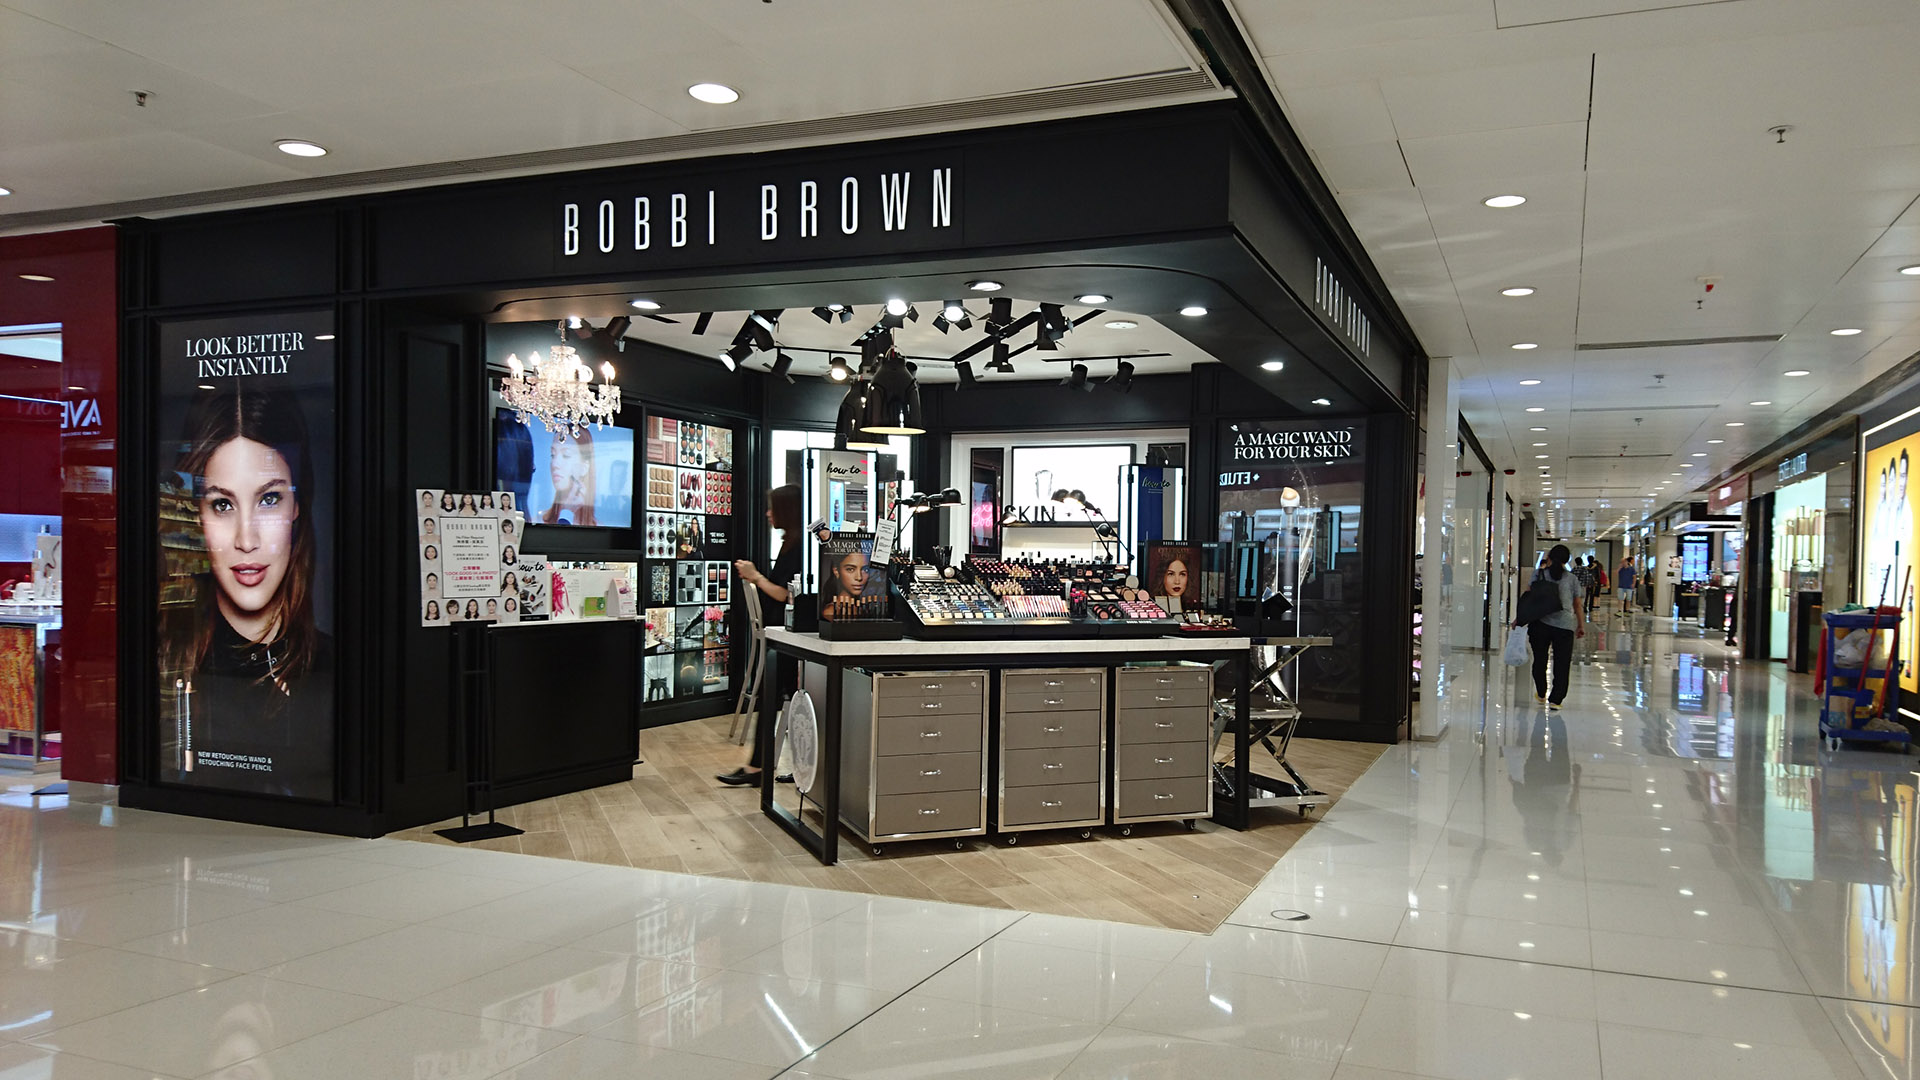 Bobbi Brown Tuen Mun Hong Kong Store Design Development and Project Management by Plaap Design